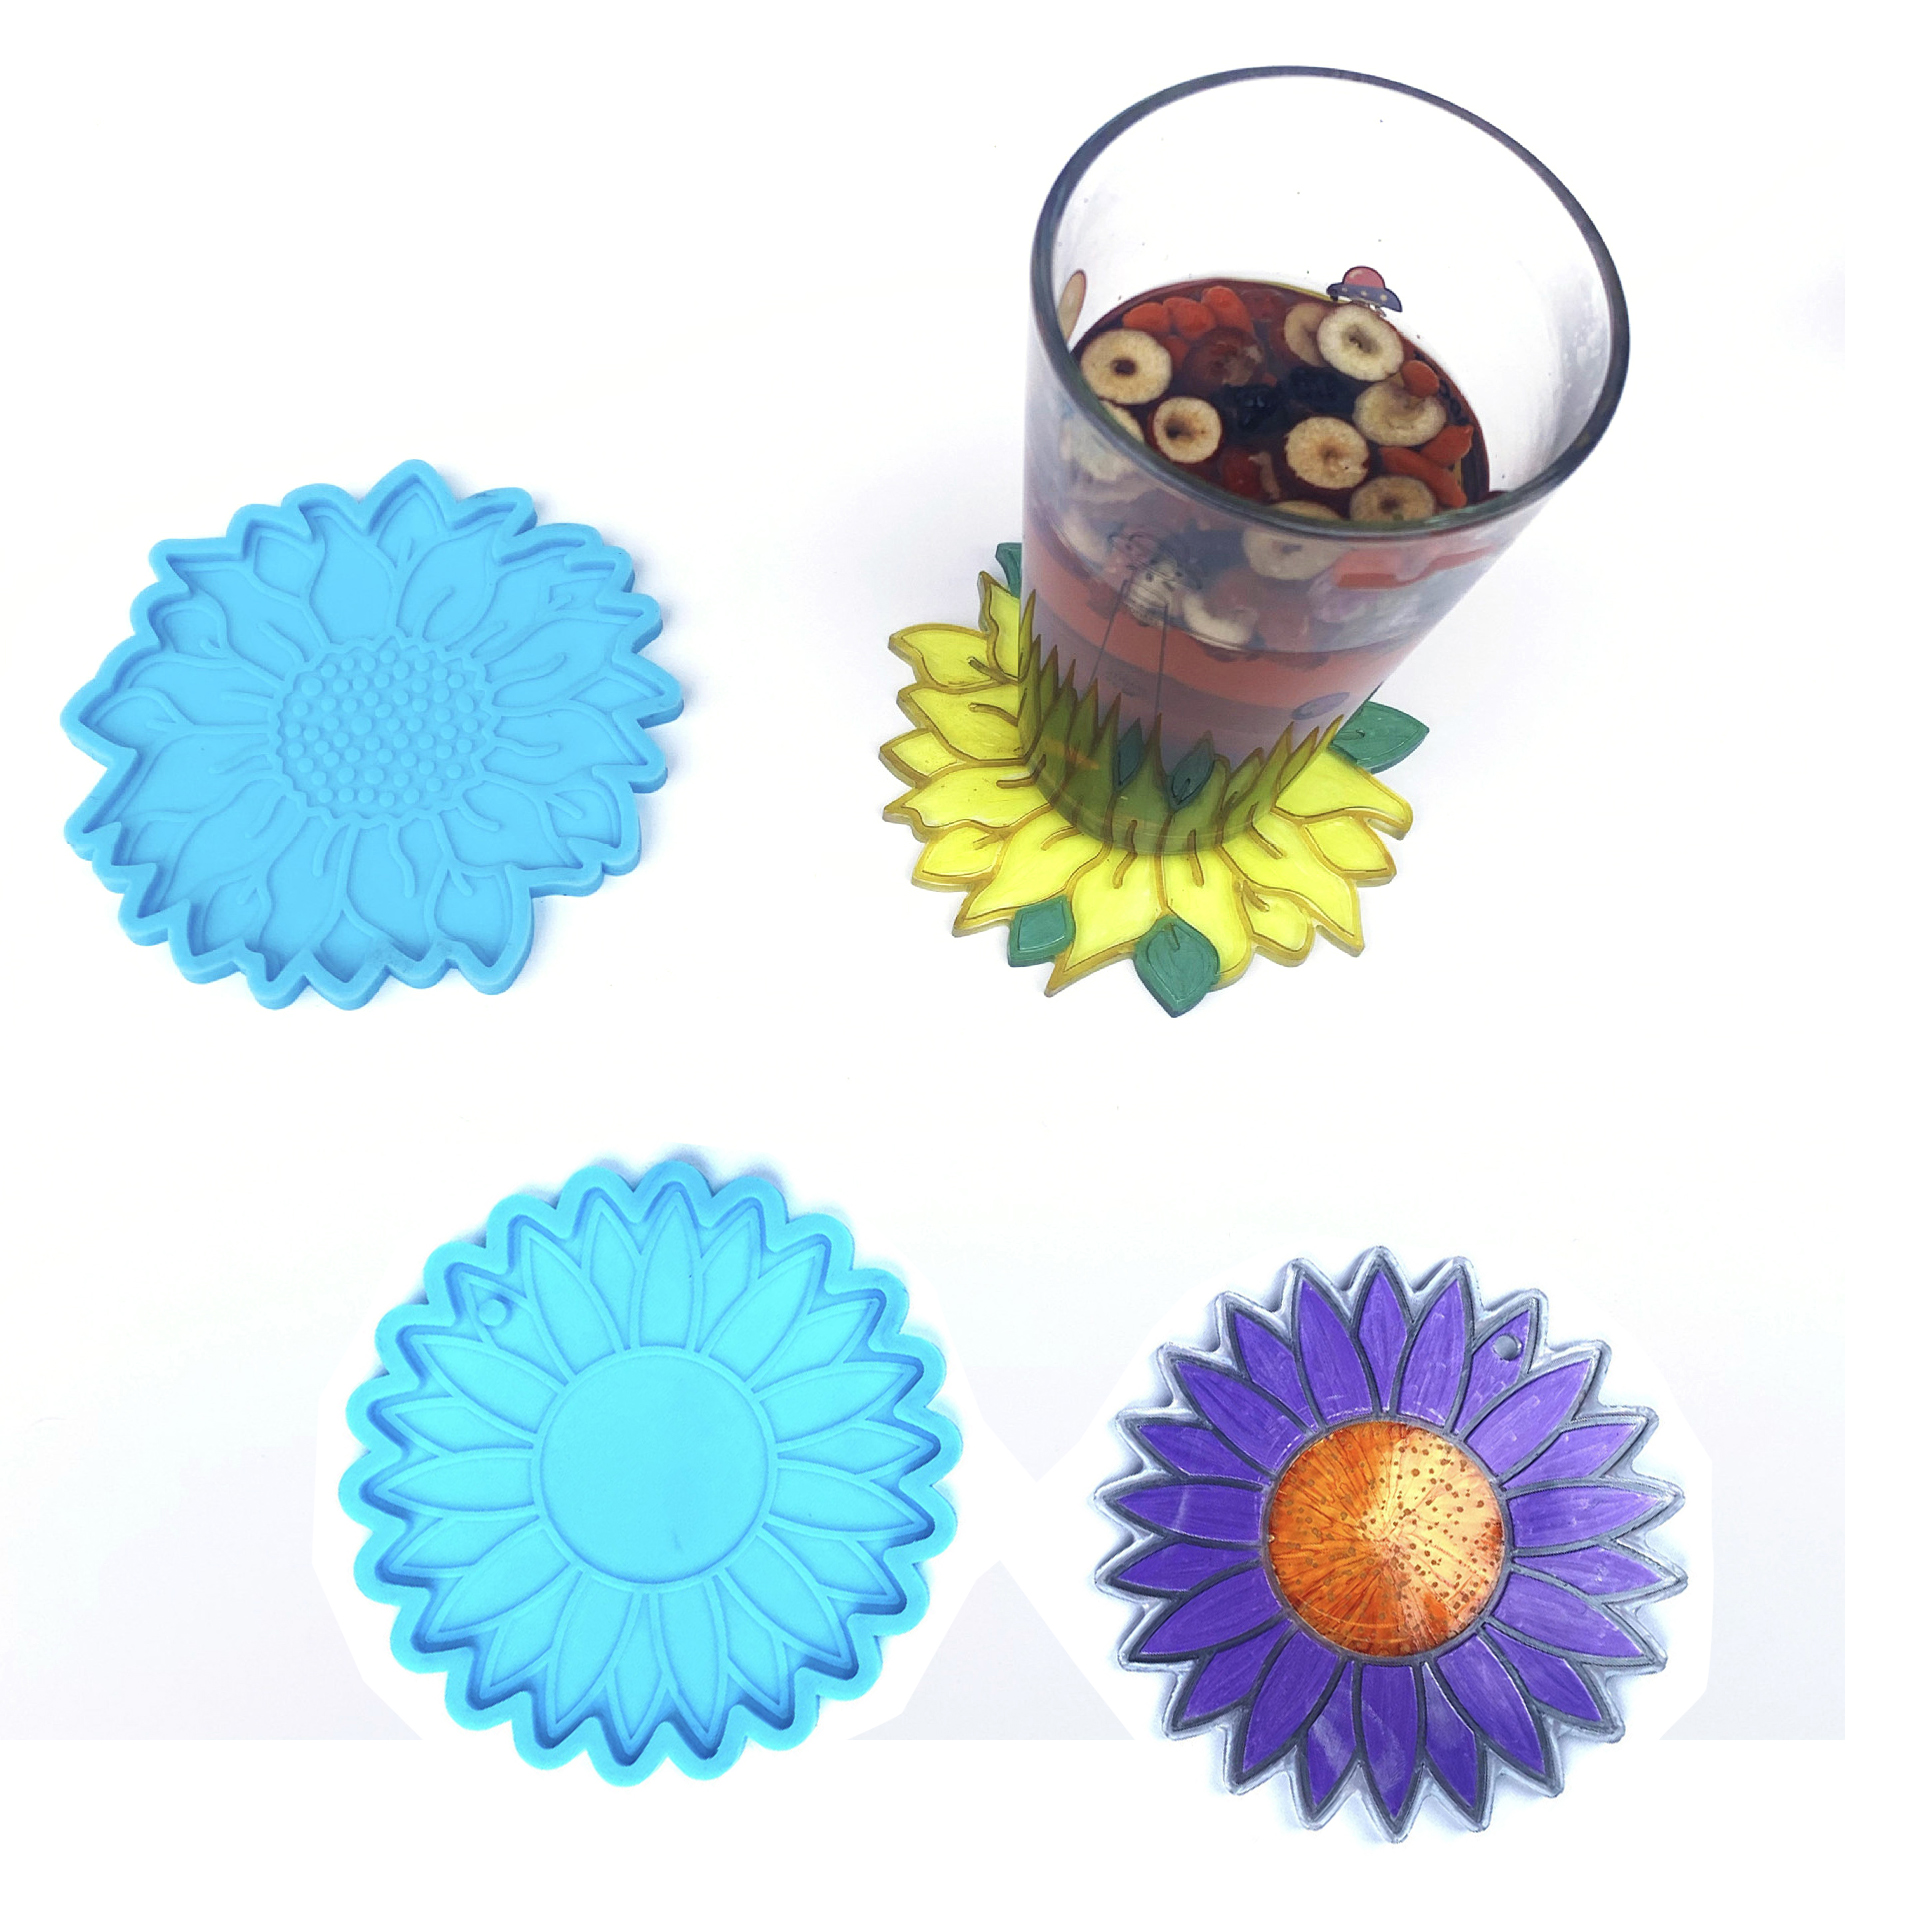 MQSDL Sun ดอกไม้ DIY ถ้วยหัตถศิลป์ Mat แม่พิมพ์เทียนไขเเม่พิมพ์สำหรับทำอาหาร Coaster ทำจานเครื่องมือแม่พิมพ์